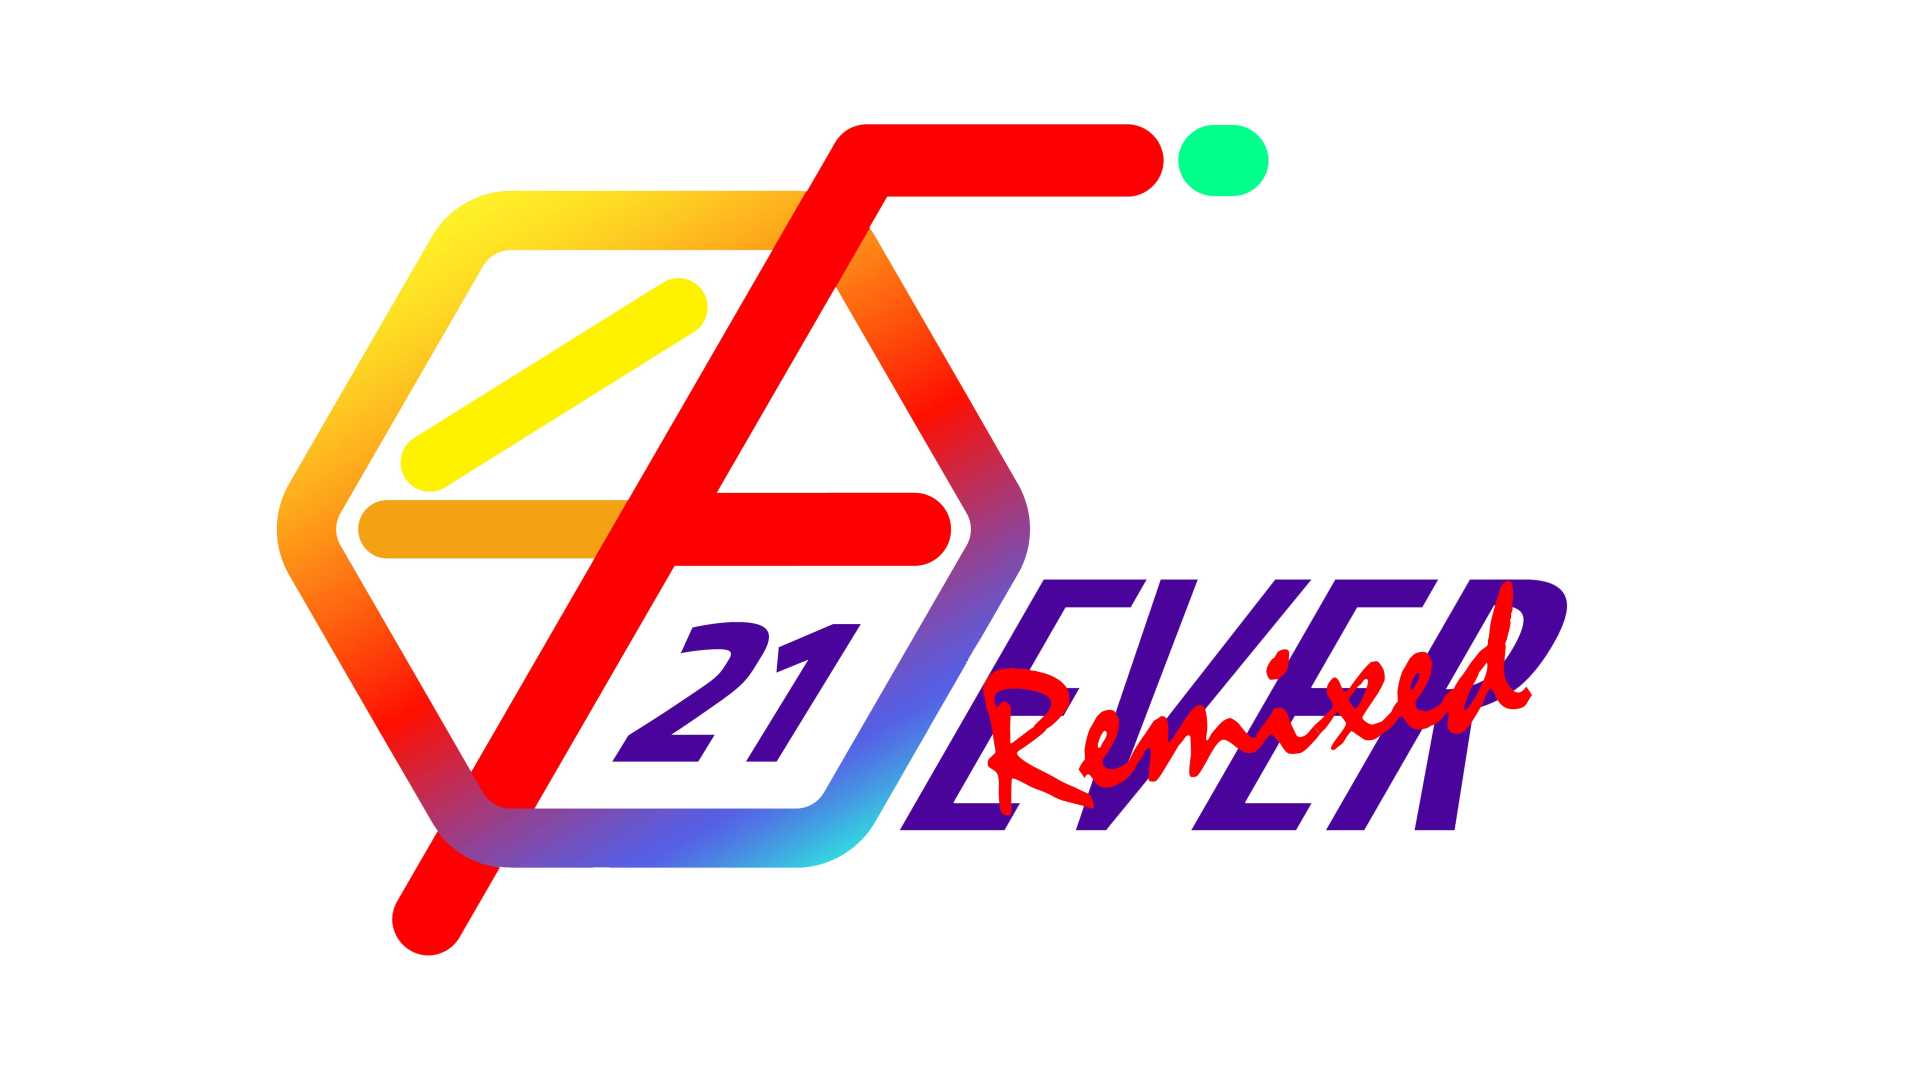 【二创混剪】FEVER21-Studio Remixed 混剪